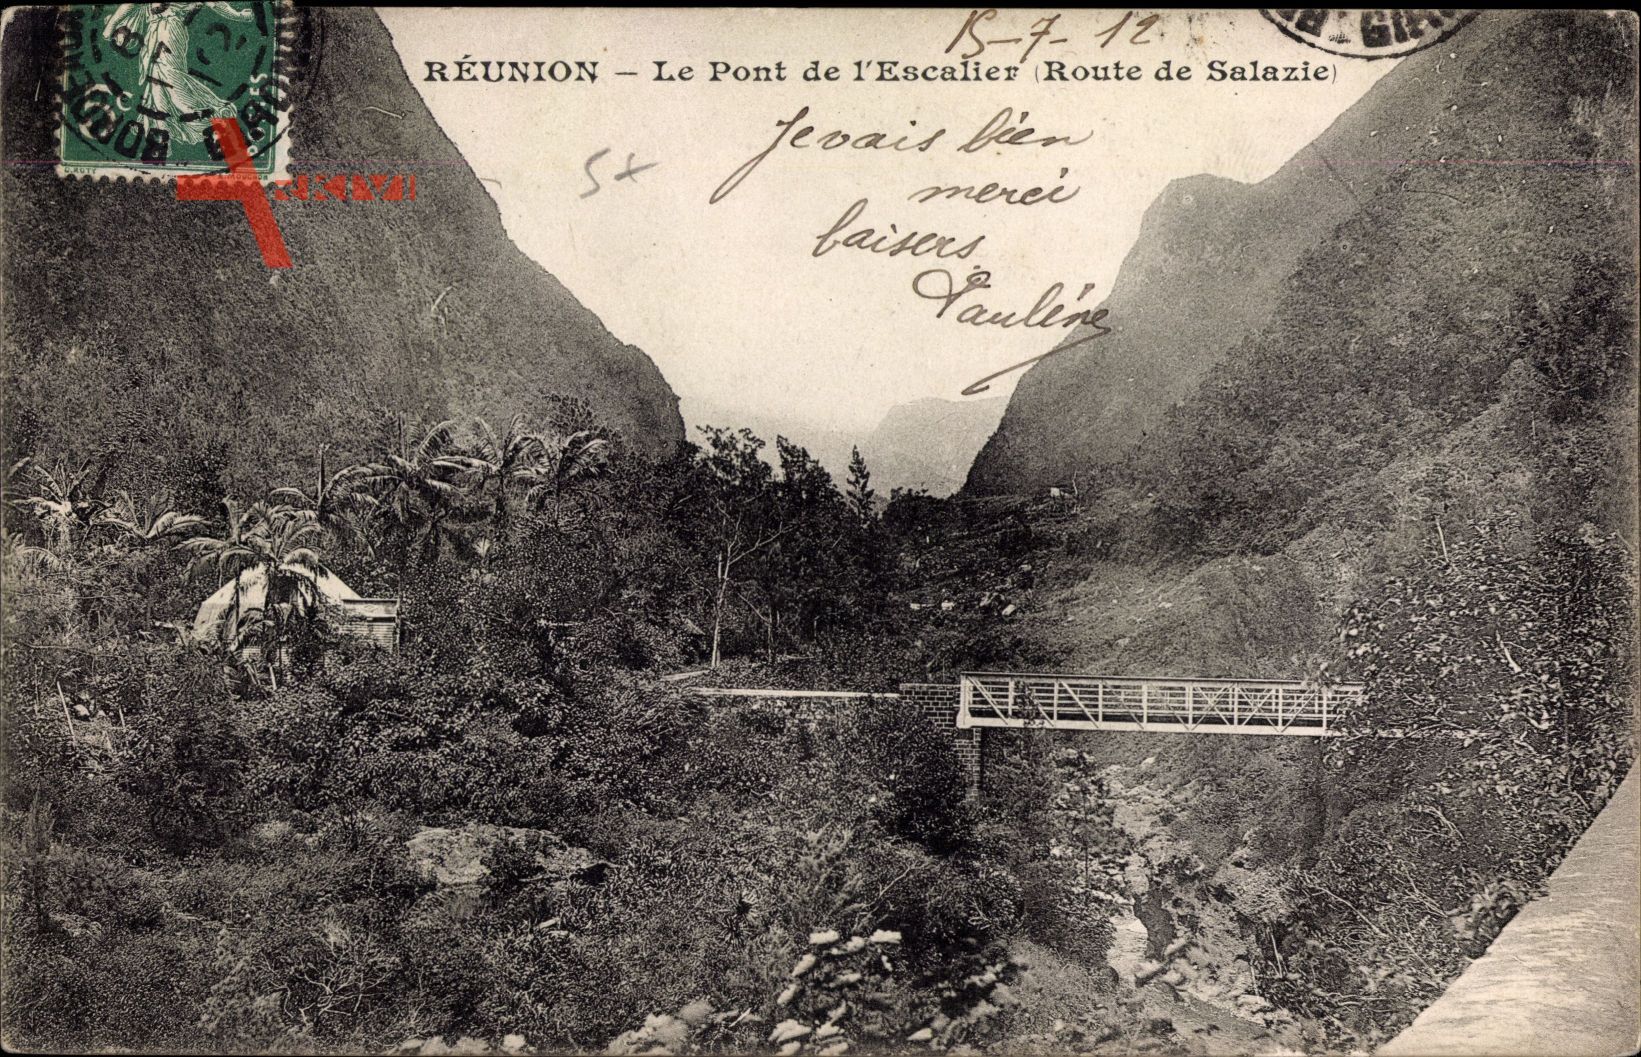 Reunion, Le Pont de l'Escalier, Route de Salazie, Brücke, Berge, Palmen